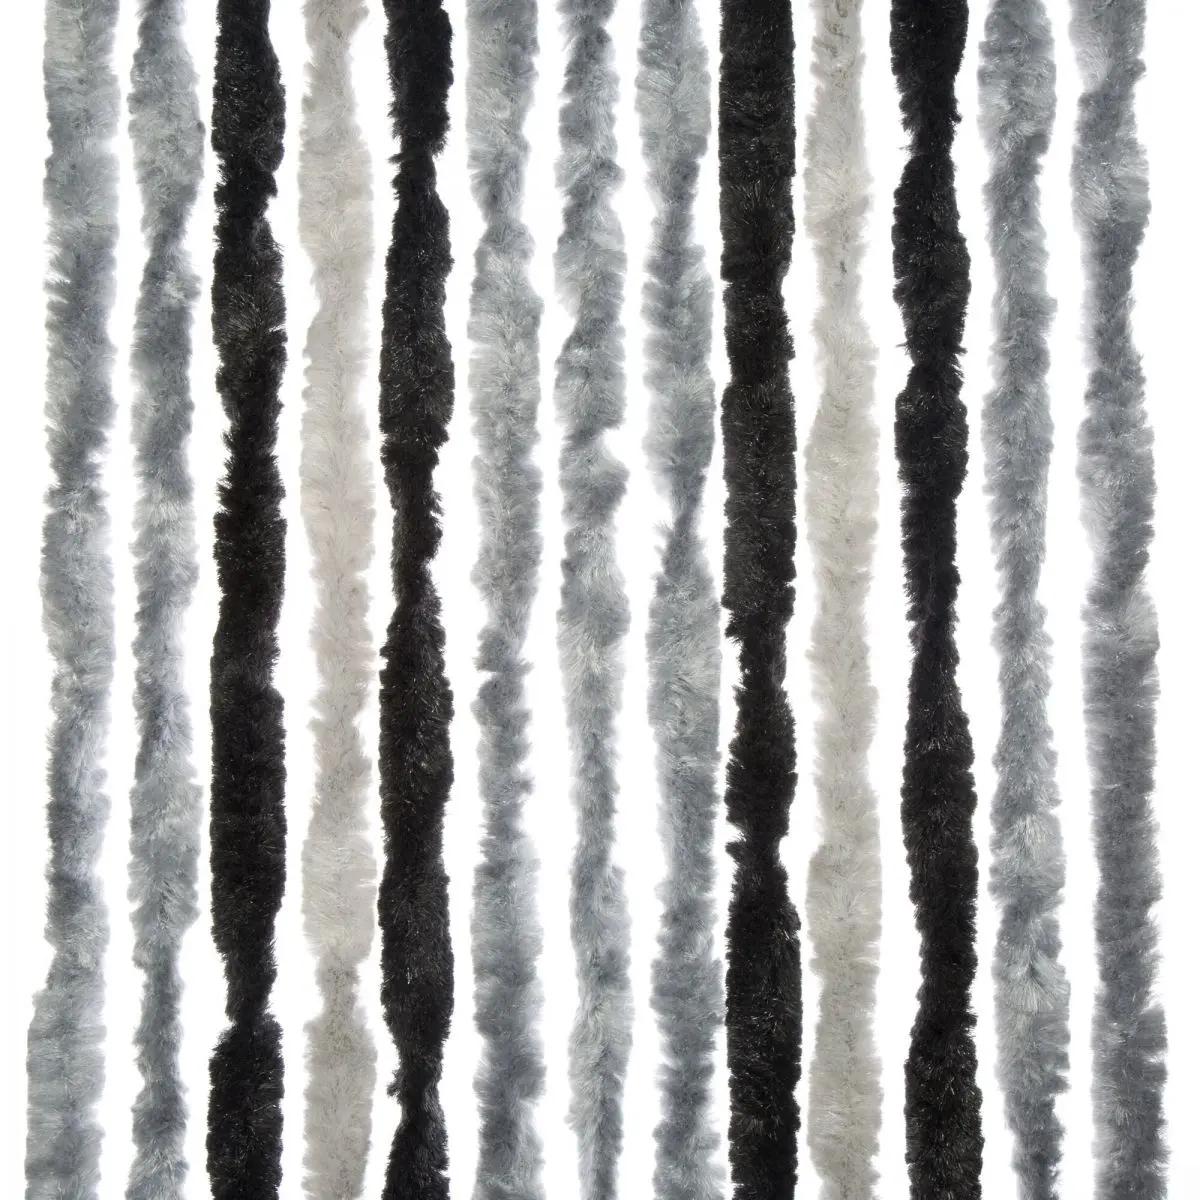 Cort din fleece/drapea de balcon - 100 x 205 cm, gri deschis/argintiu/antracit